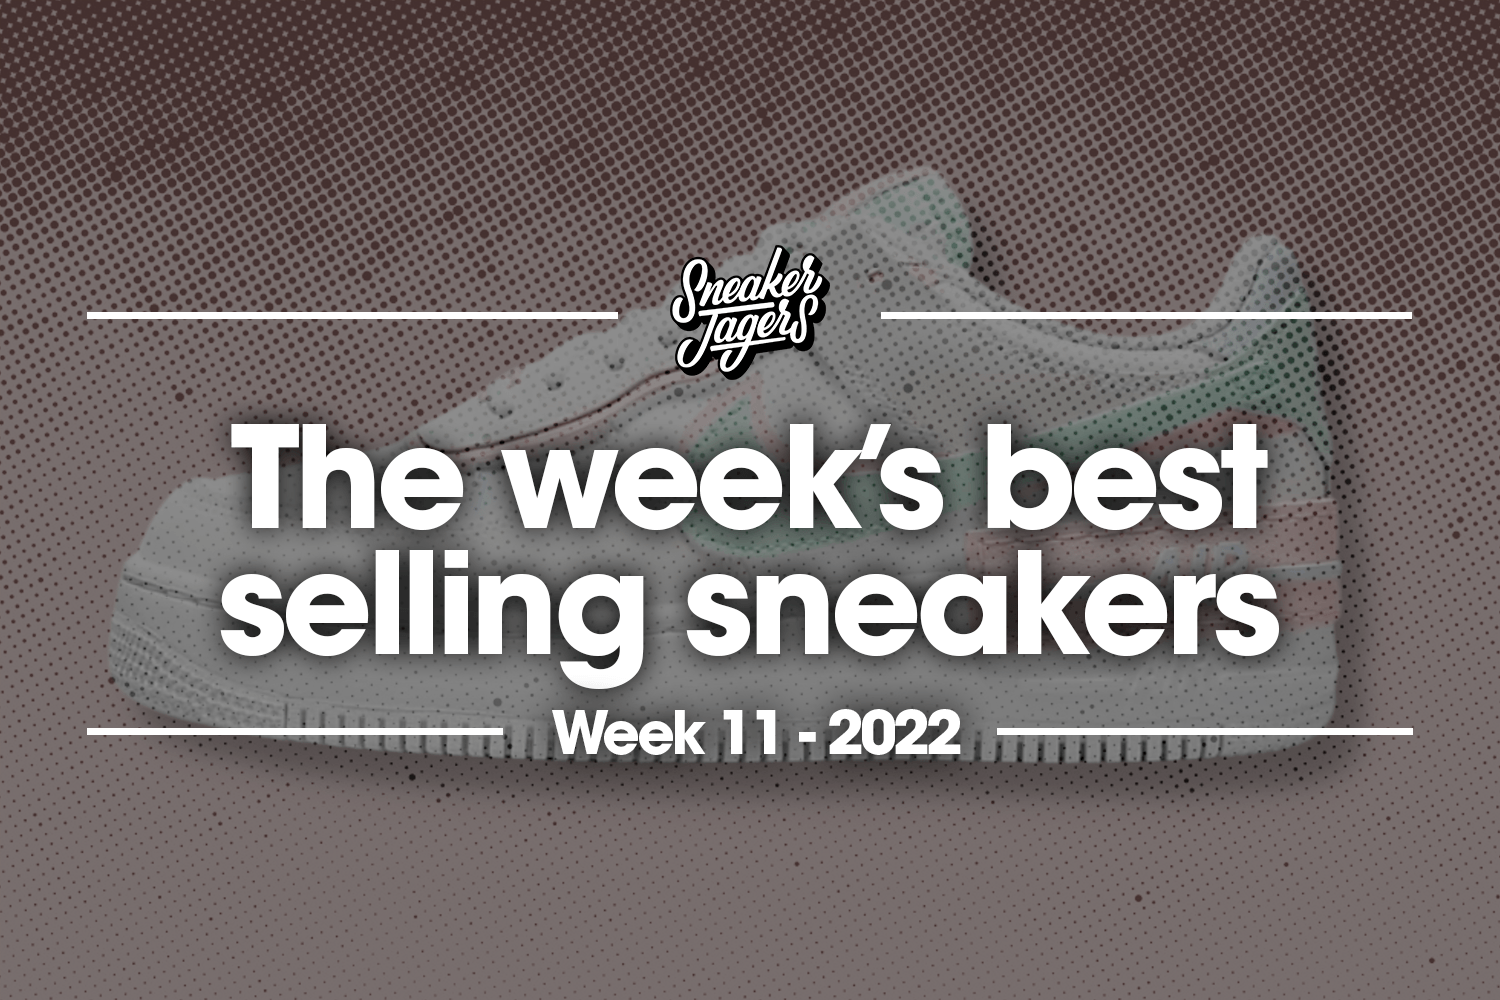 The 5 best-selling sneakers of week 11